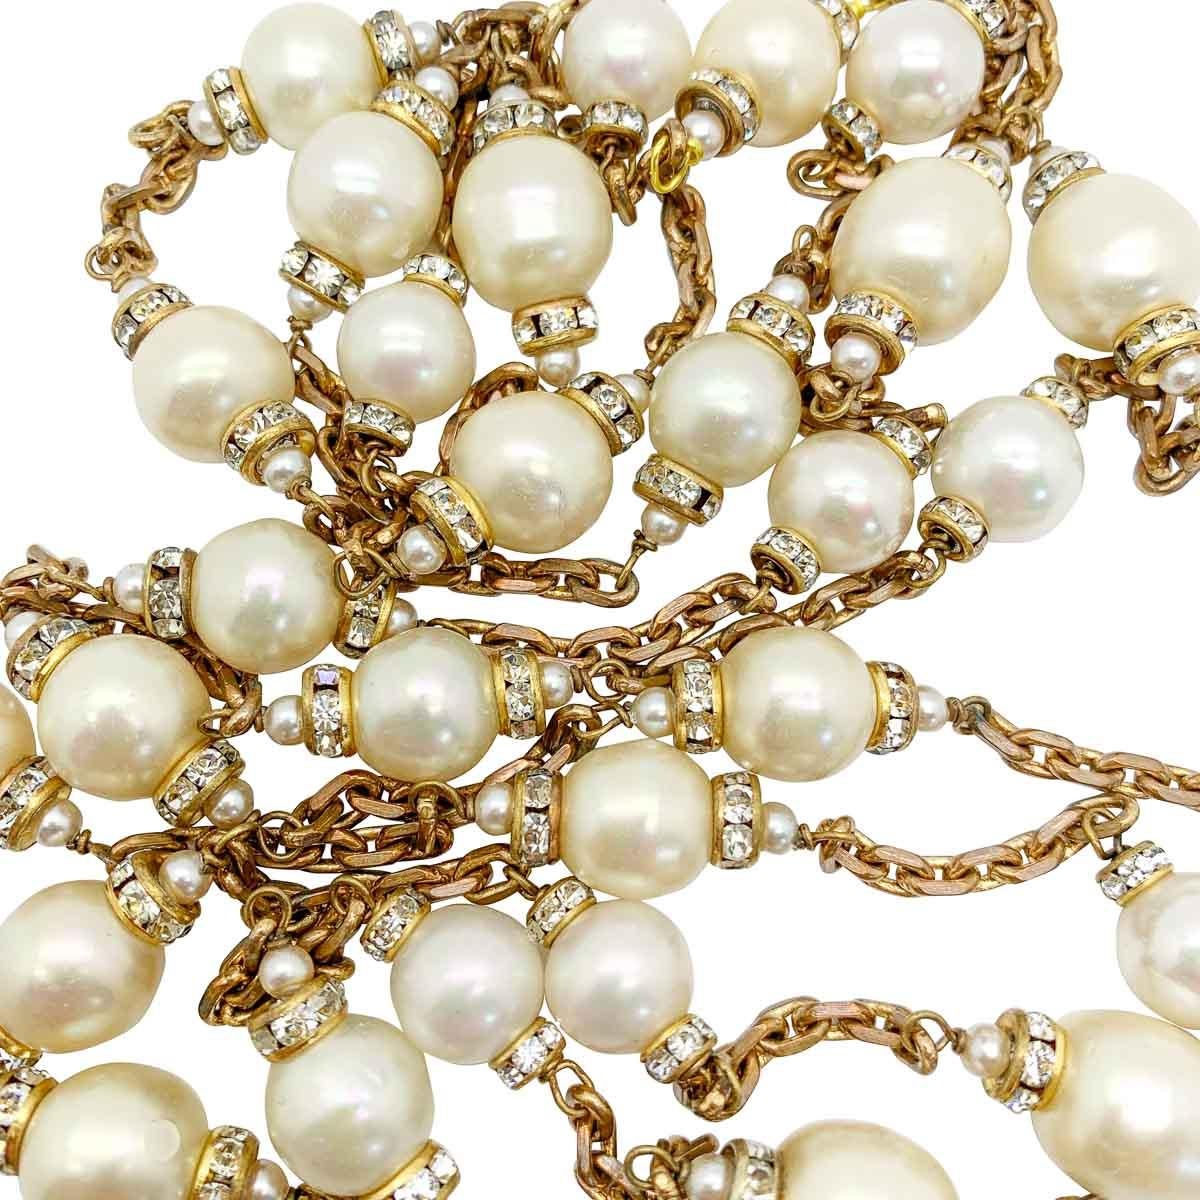 Eine Chanel-Perlen-Sautoir-Halskette aus den 1960er Jahren, die Chanel zugeschrieben wird (unsigniert) und höchstwahrscheinlich von Maison Gripoix in Paris für das Haus hergestellt wurde, als Coco Chanel noch lebte und ihr gleichnamiges Haus